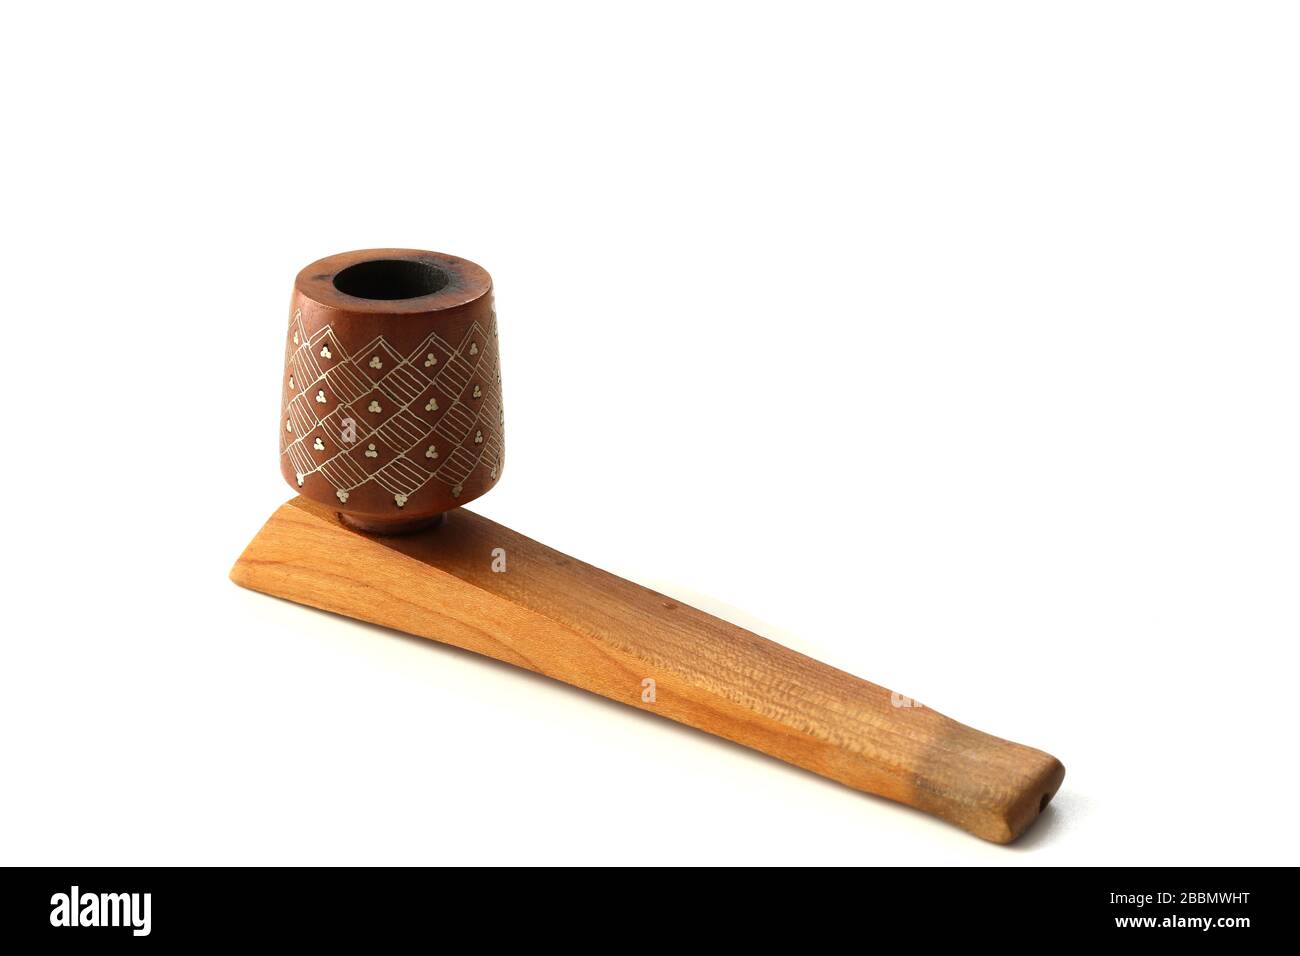 Tuyau de tabac en bois fait à la main sur fond blanc. Rustique, antic, vintage, rare Banque D'Images